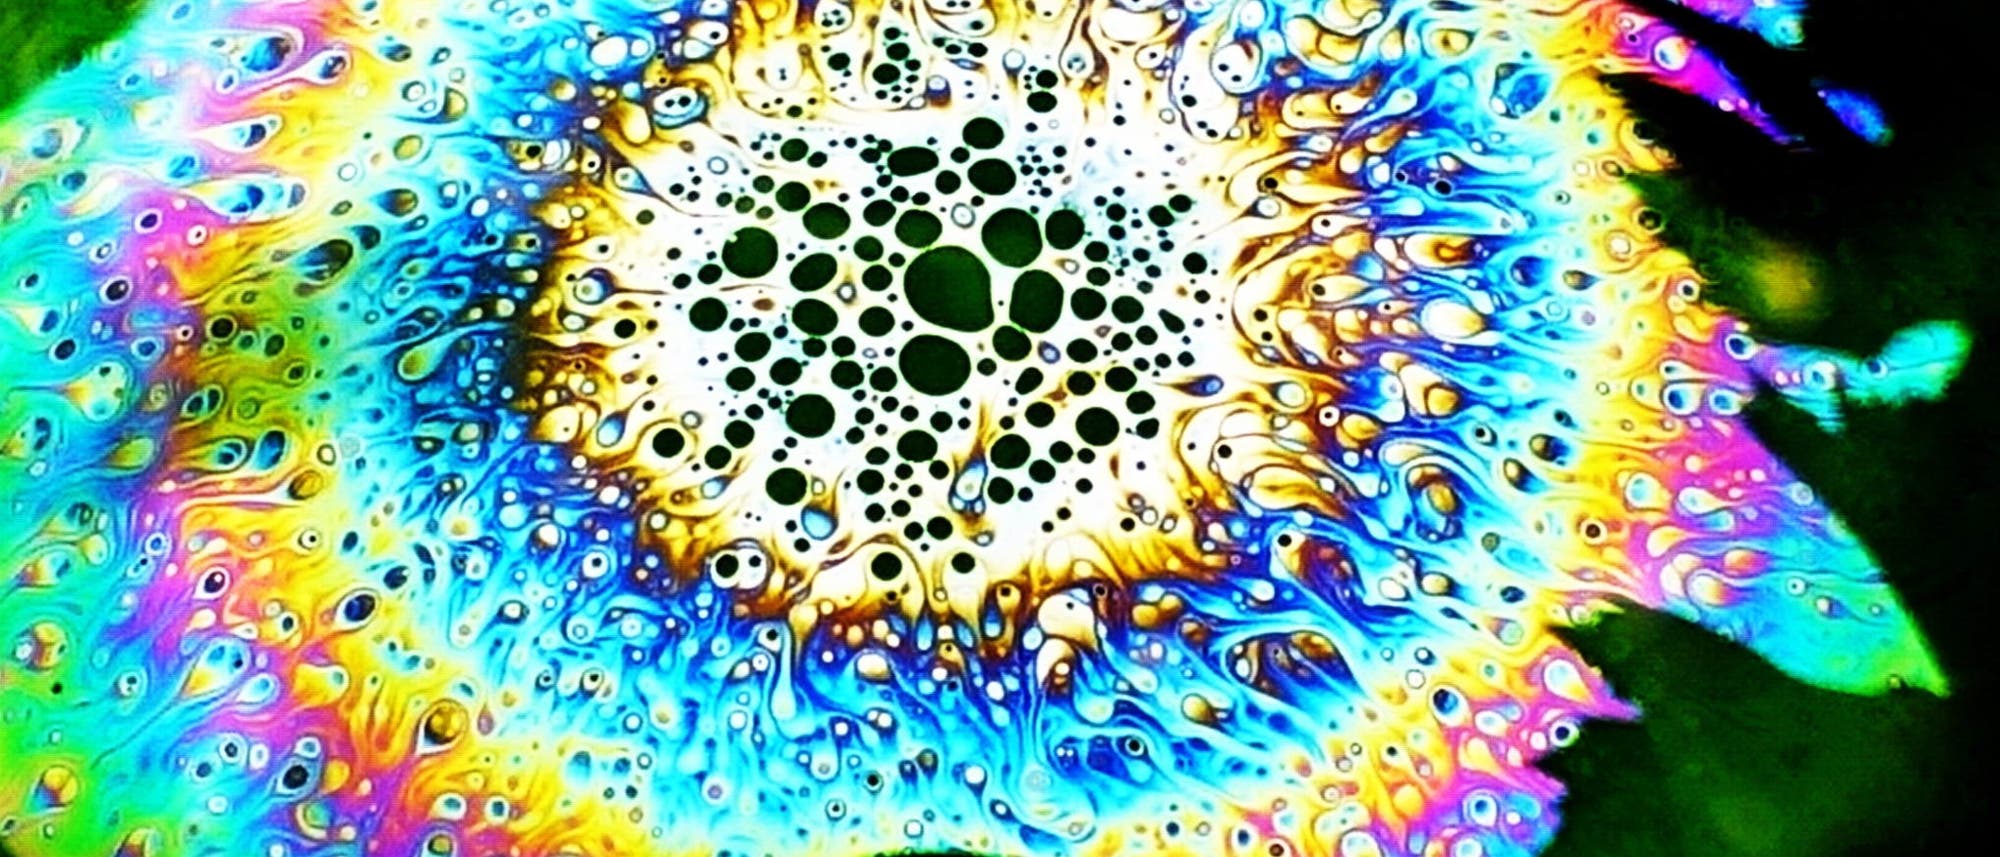 Auf einer Seifenblase zeigen sich inmitten der farbigen Interferenzringe runde, dunkle Bereiche 